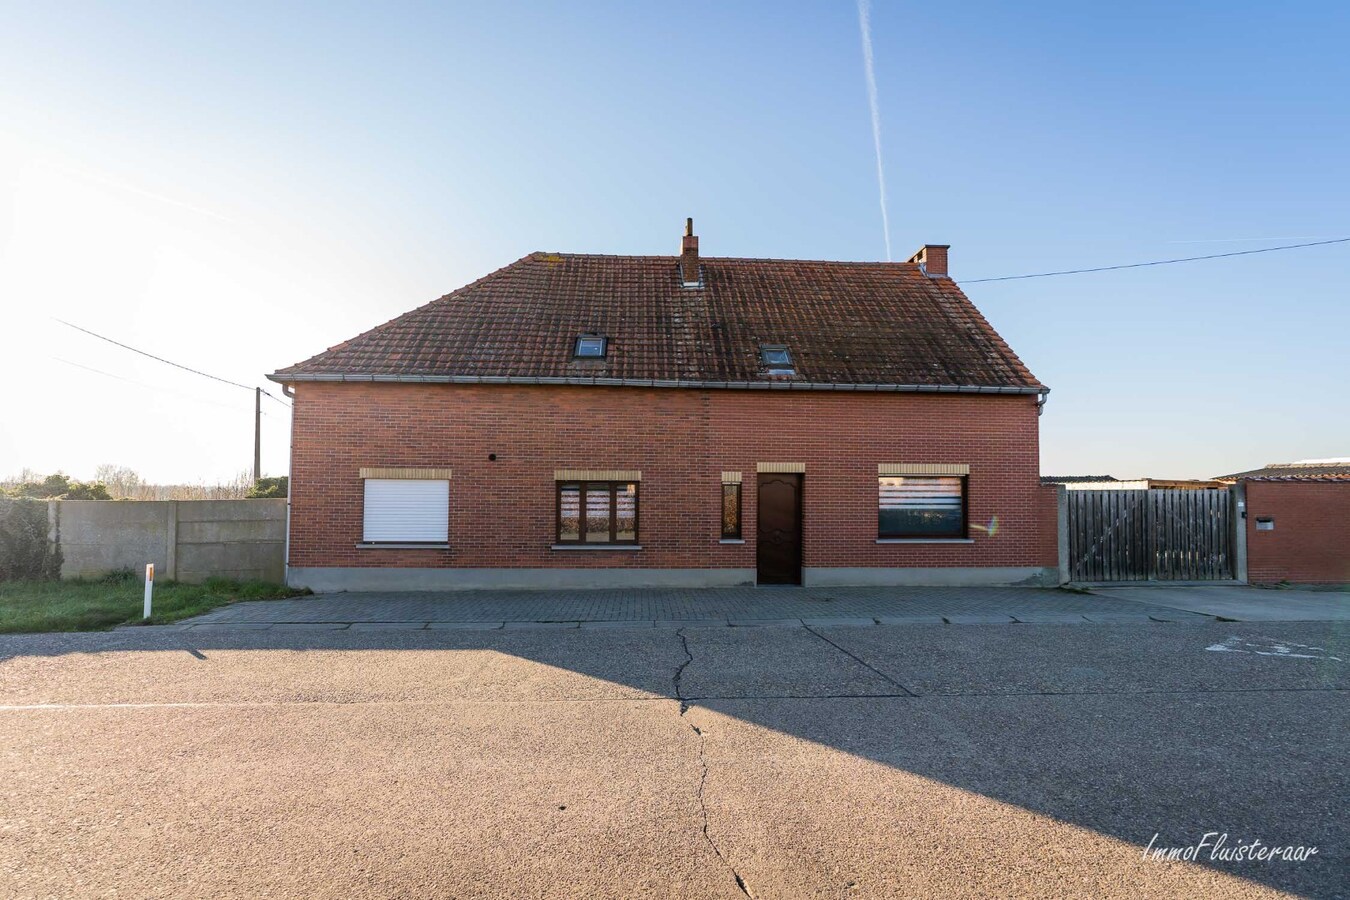 Property sold | under restrictions in Herk-de-Stad